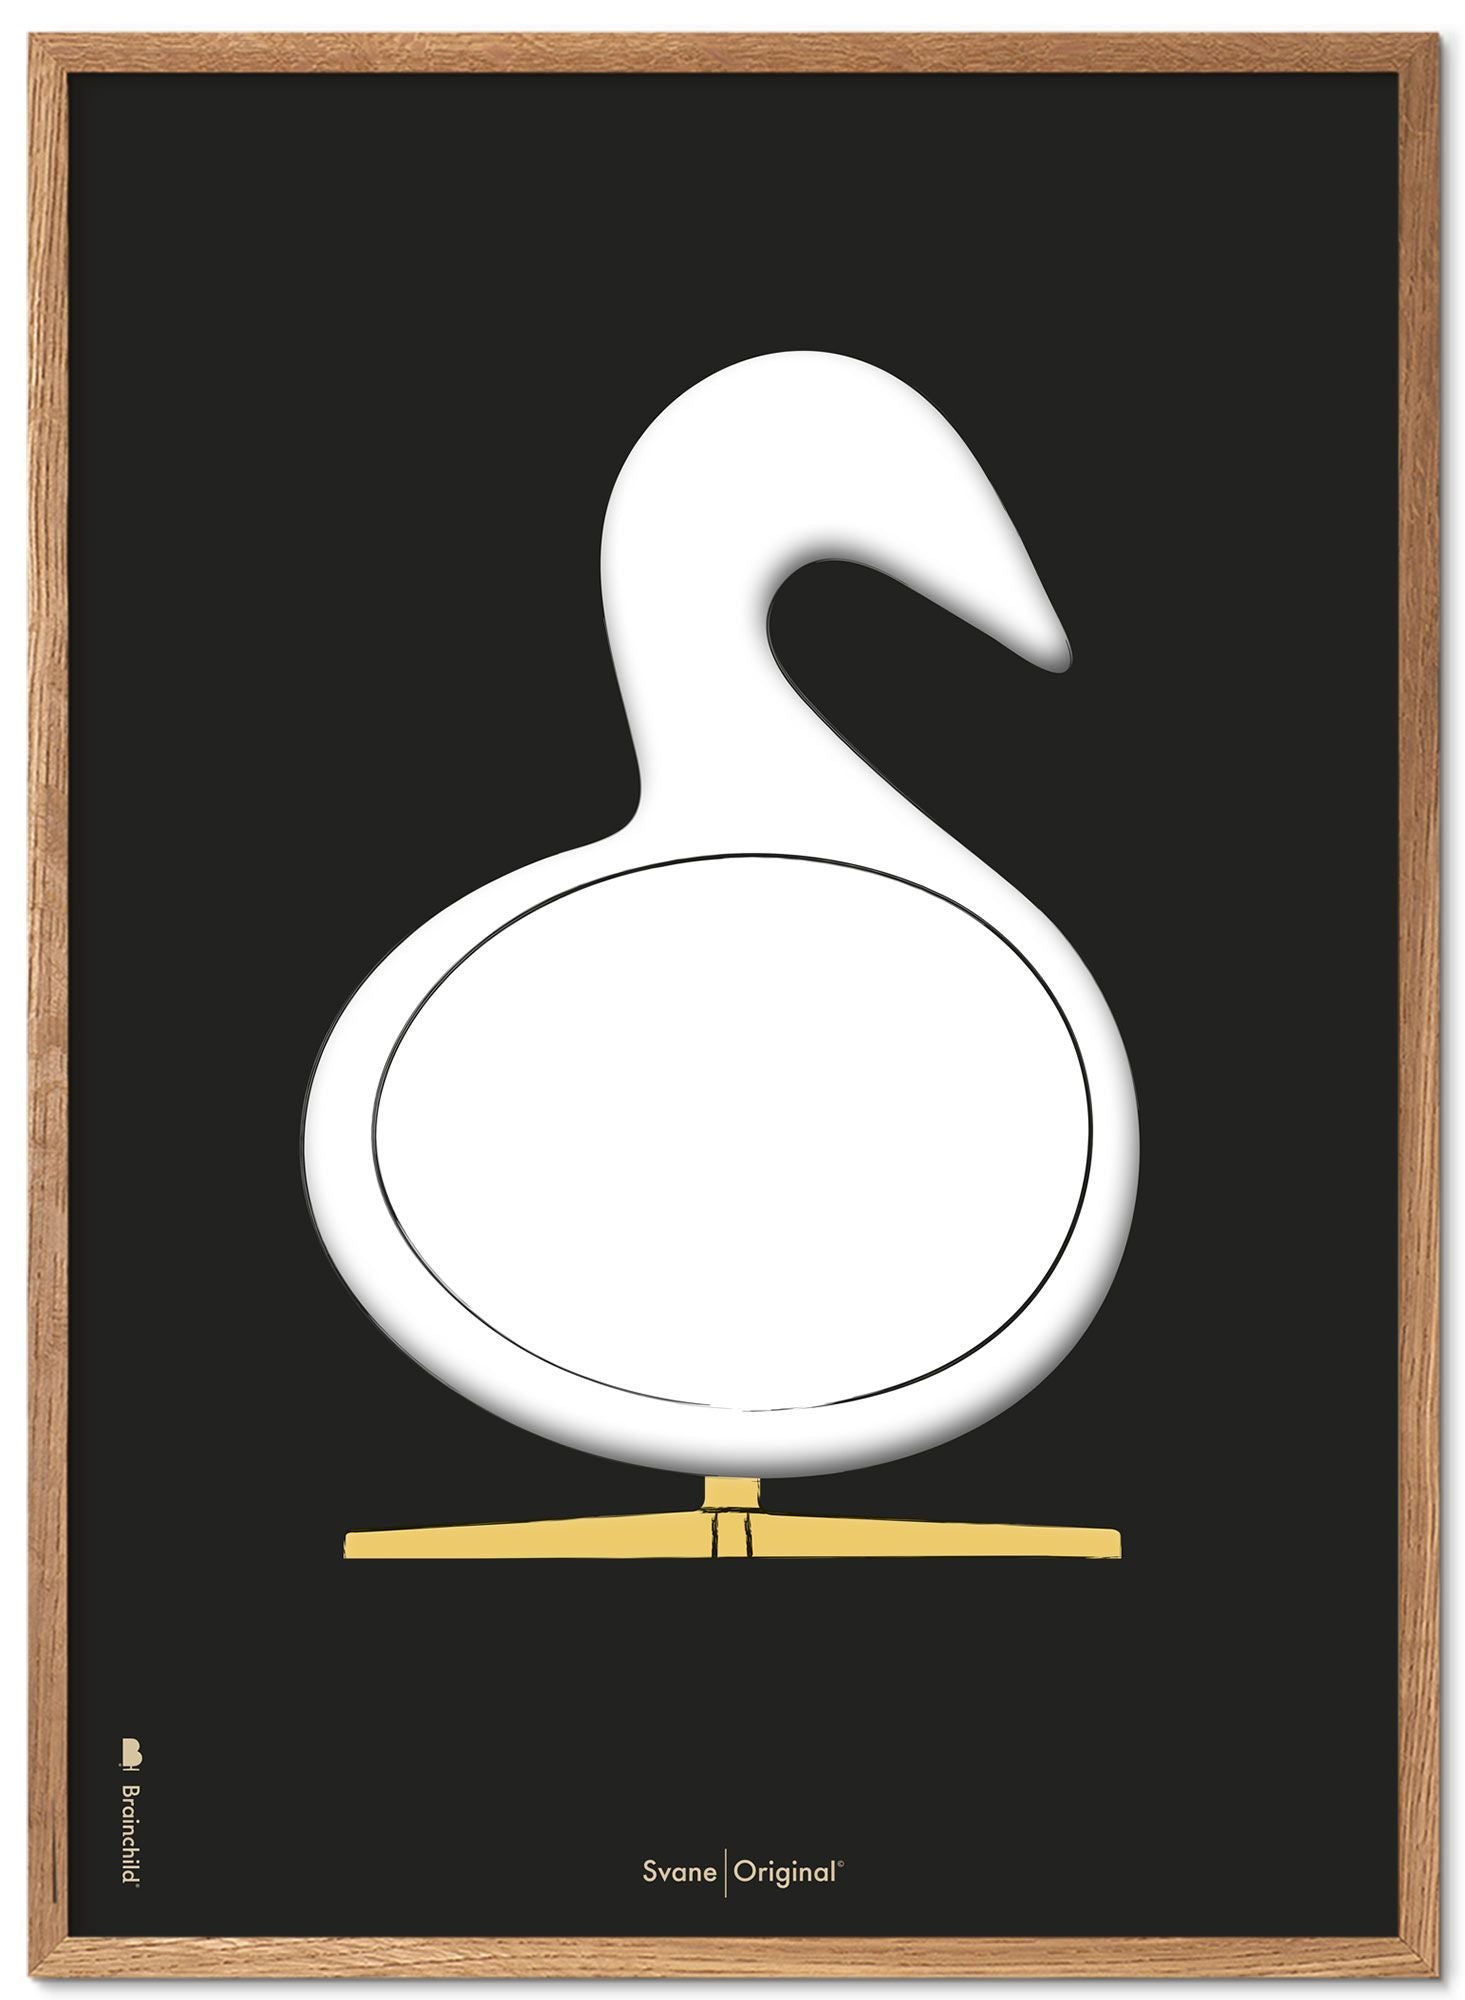 Brainchild Swan Design Sketch Poster Frame Made Of Light Wood A5, Black Background